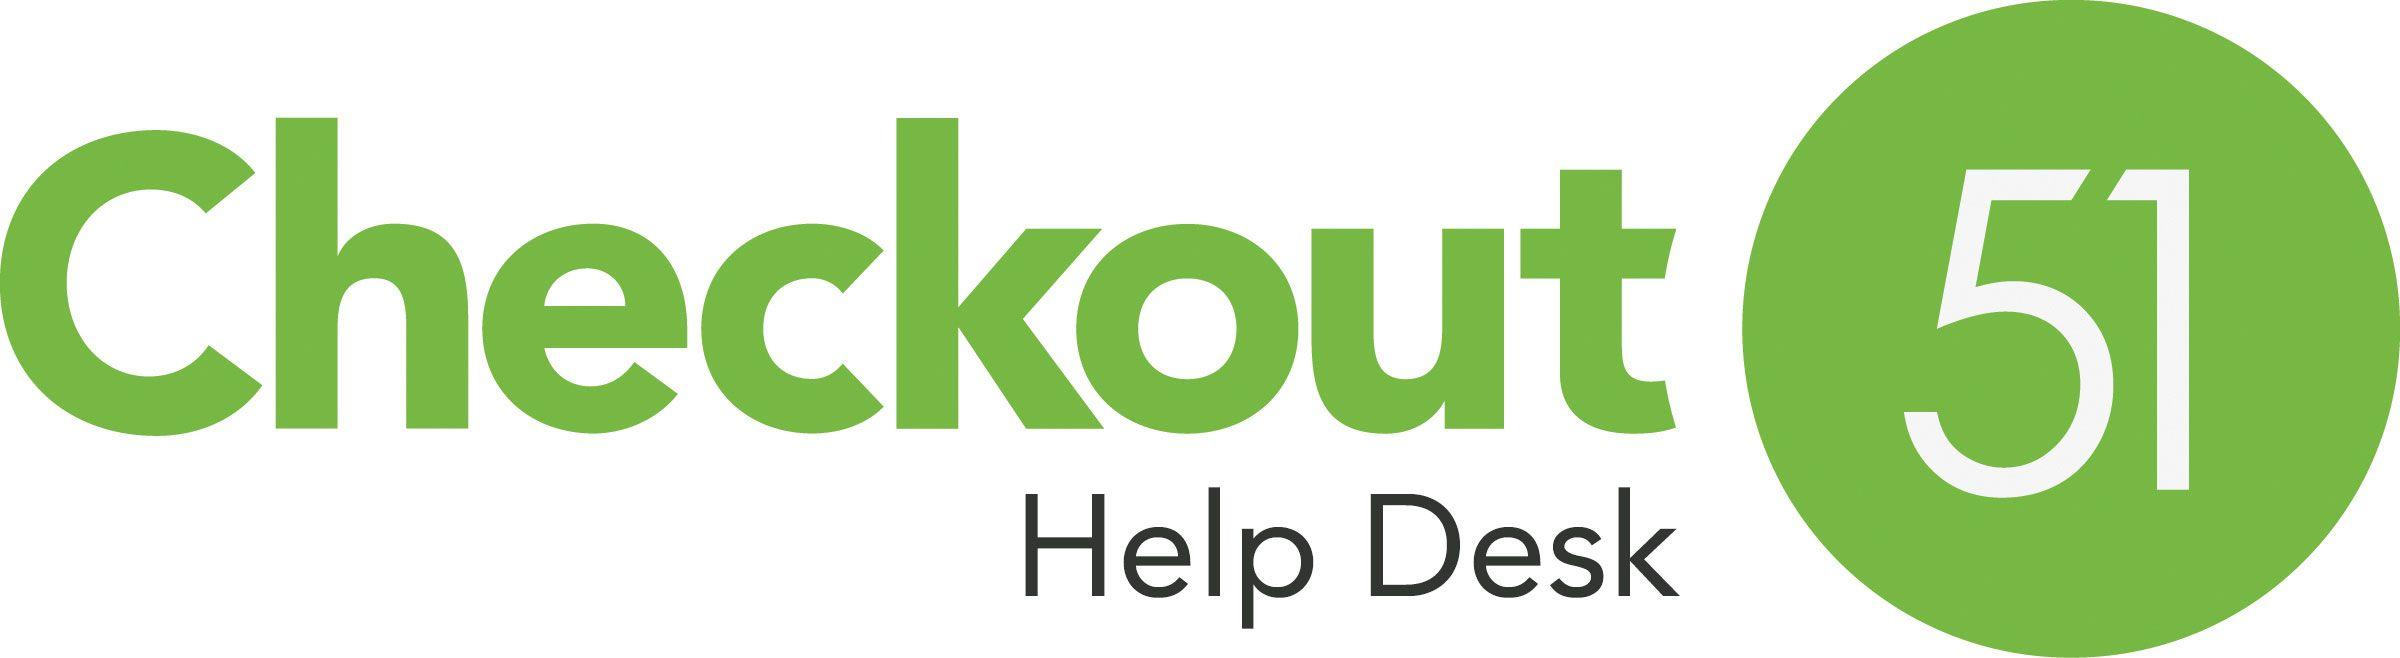 Checkout Logo - Checkout 51 Help Desk